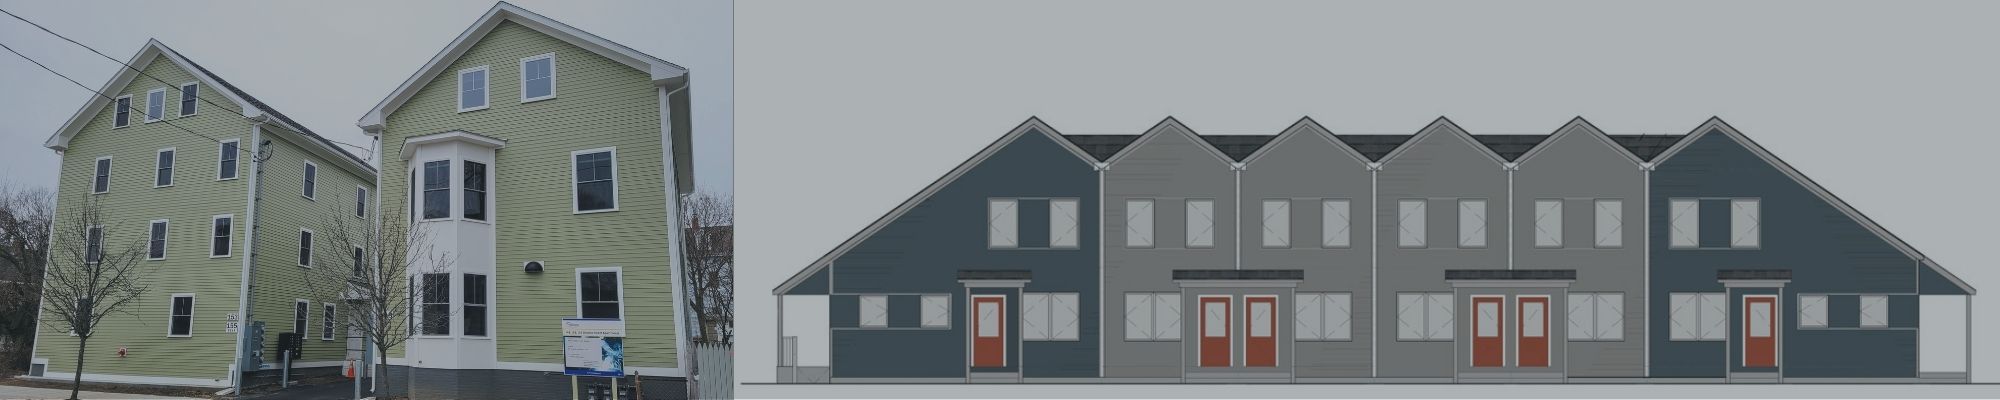 WPRI: 17 unidades de habitação a preços acessíveis reveladas em Olneyville